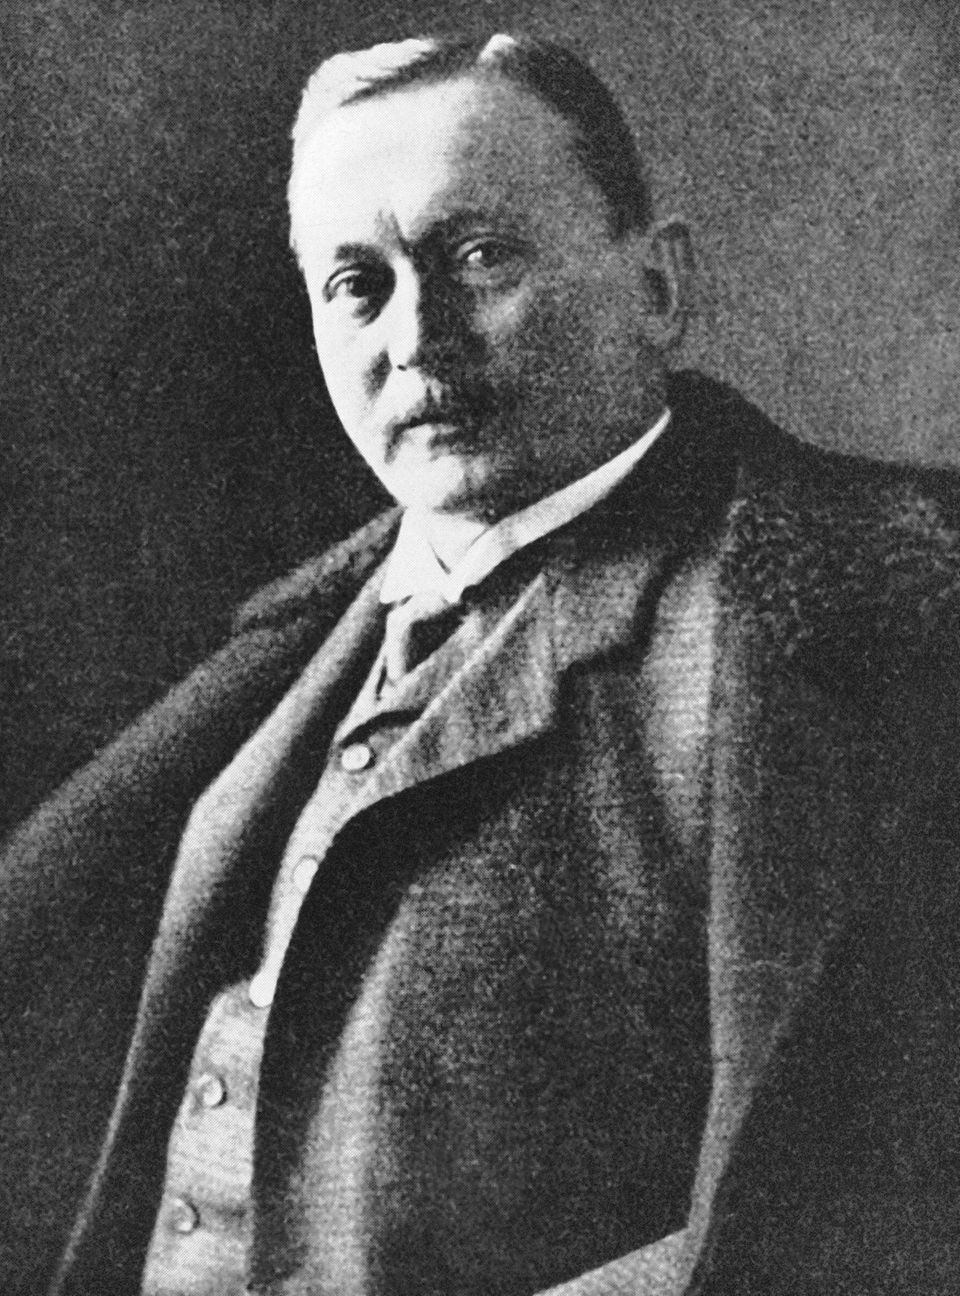 Der deutsche Afrikaforscher Hermann von Wissmann in einer zeitgenössischen Aufnahme. Von 1895 bis 1896 war er Gouverneur in Deutsch-Ostafrika. 